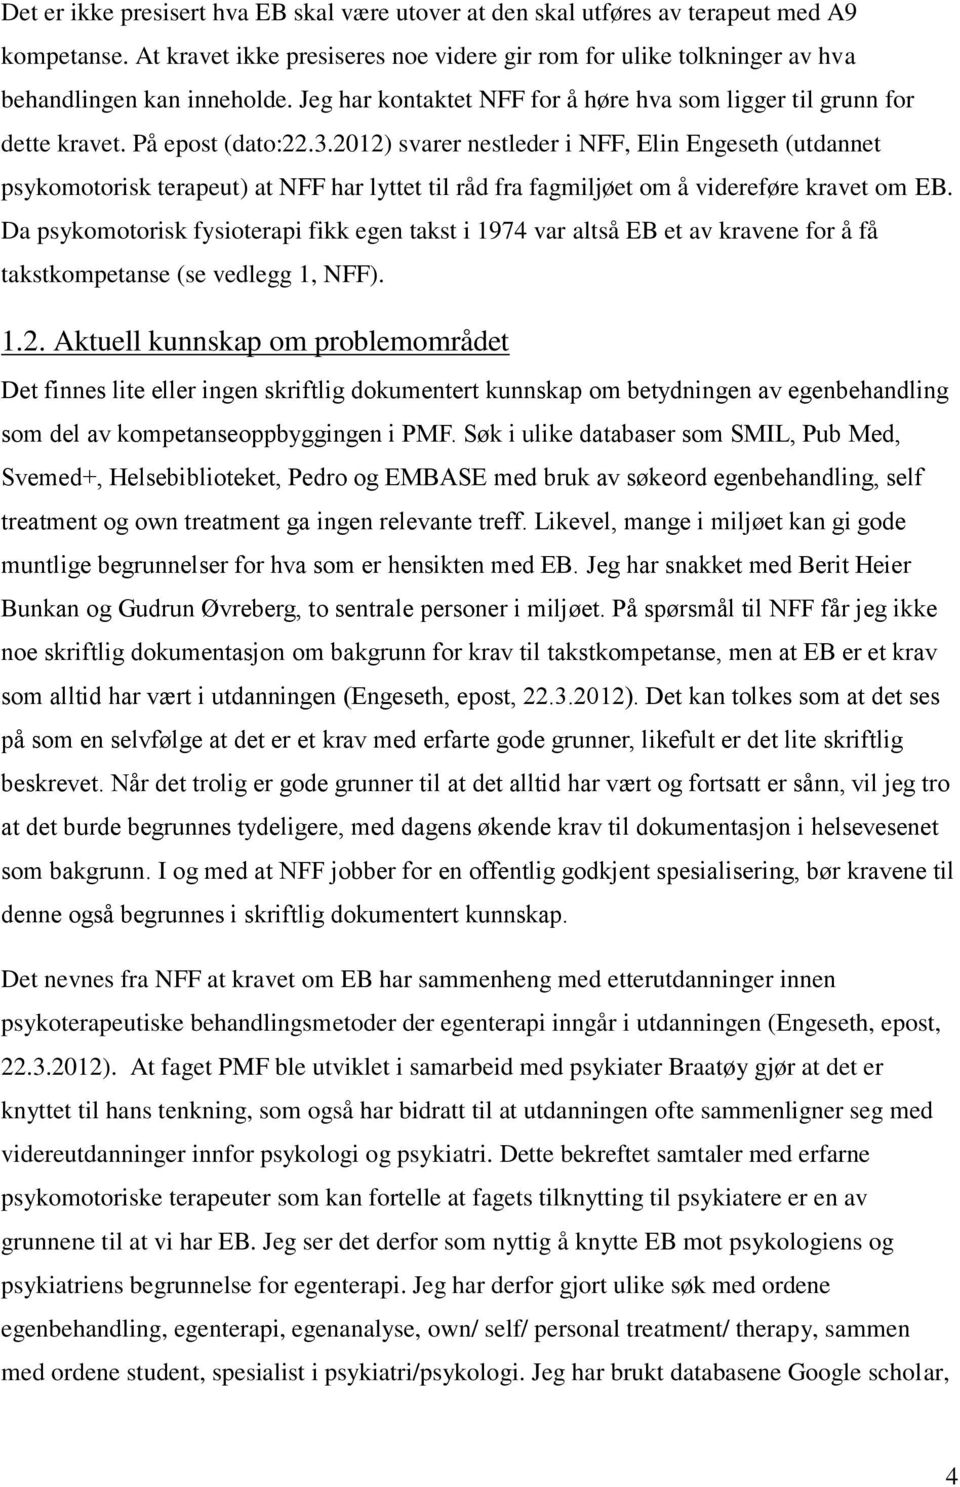 2012) svarer nestleder i NFF, Elin Engeseth (utdannet psykomotorisk terapeut) at NFF har lyttet til råd fra fagmiljøet om å videreføre kravet om EB.